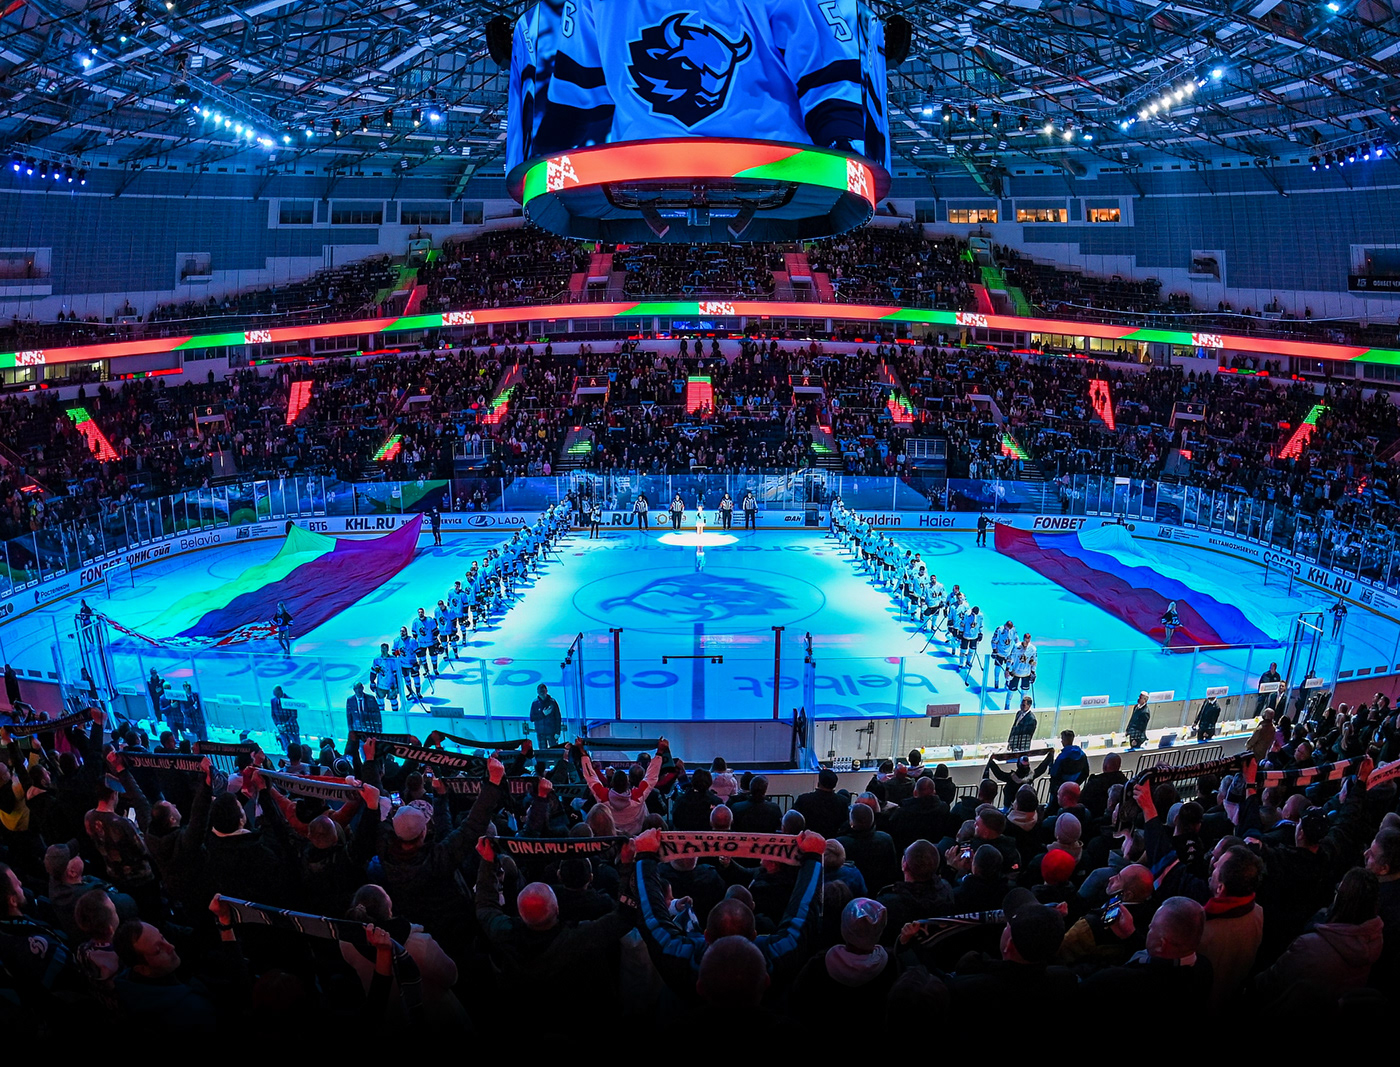 belarus hockey hockey design Logo Design logotypes Sports Design Sports Identity Sports logo